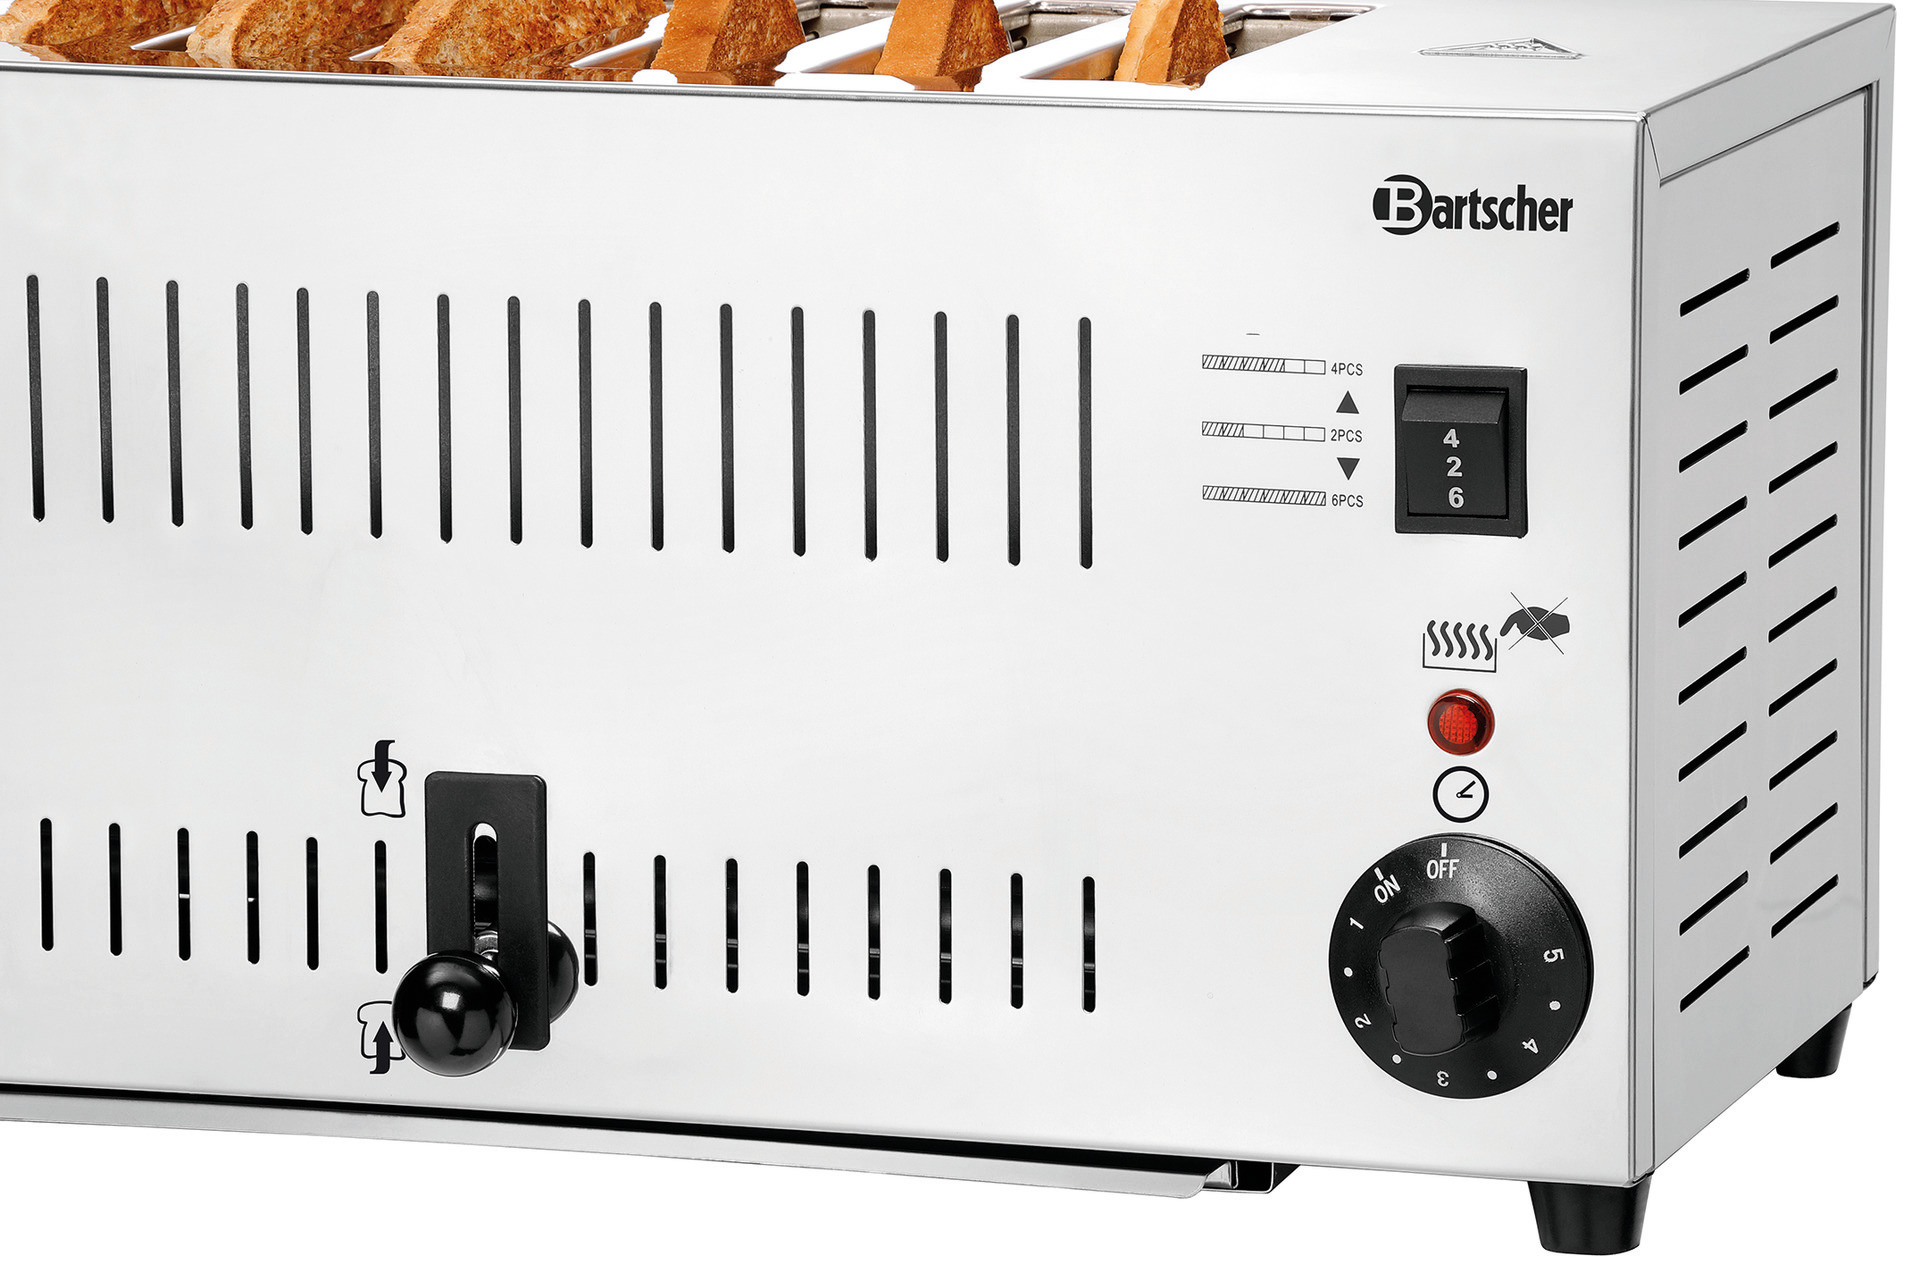 Toaster für 6 Scheiben 405 x 245 x 220 mm / 230 V / 2,50 kW